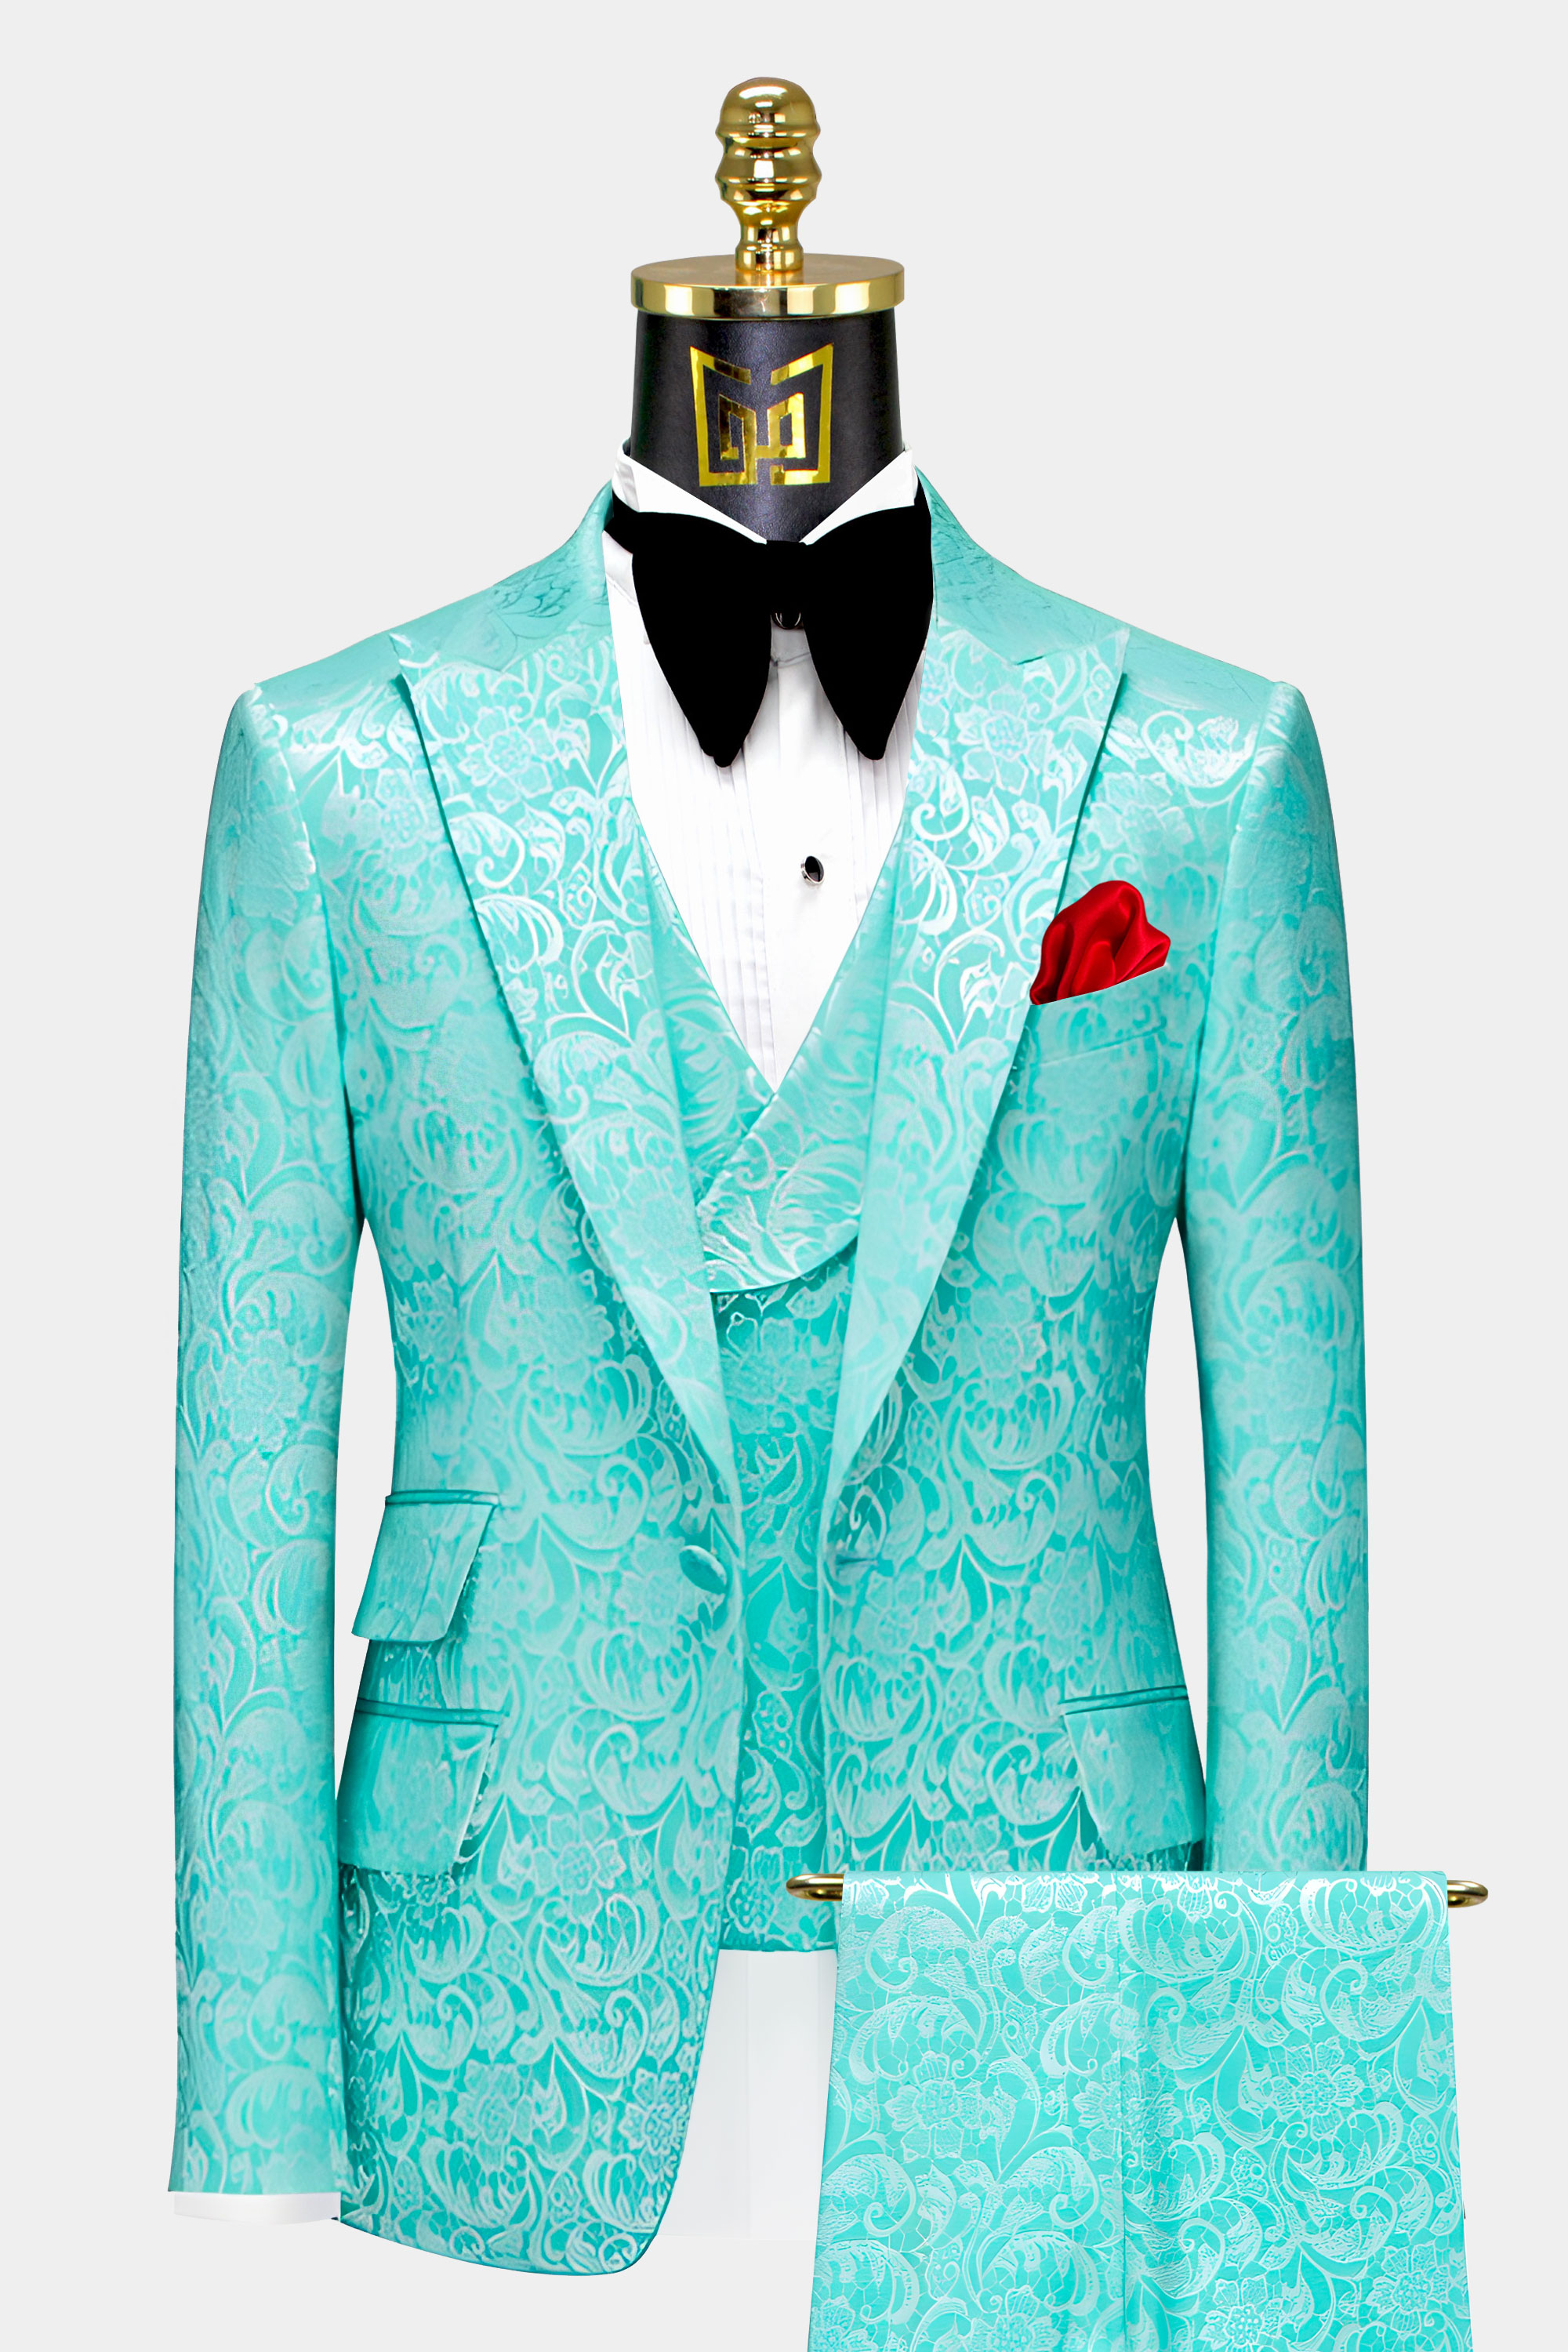 Mens-Turquoise-Suit-Wedding-Groom-Prom-Tuxedo-from-Gentlemansguru.com